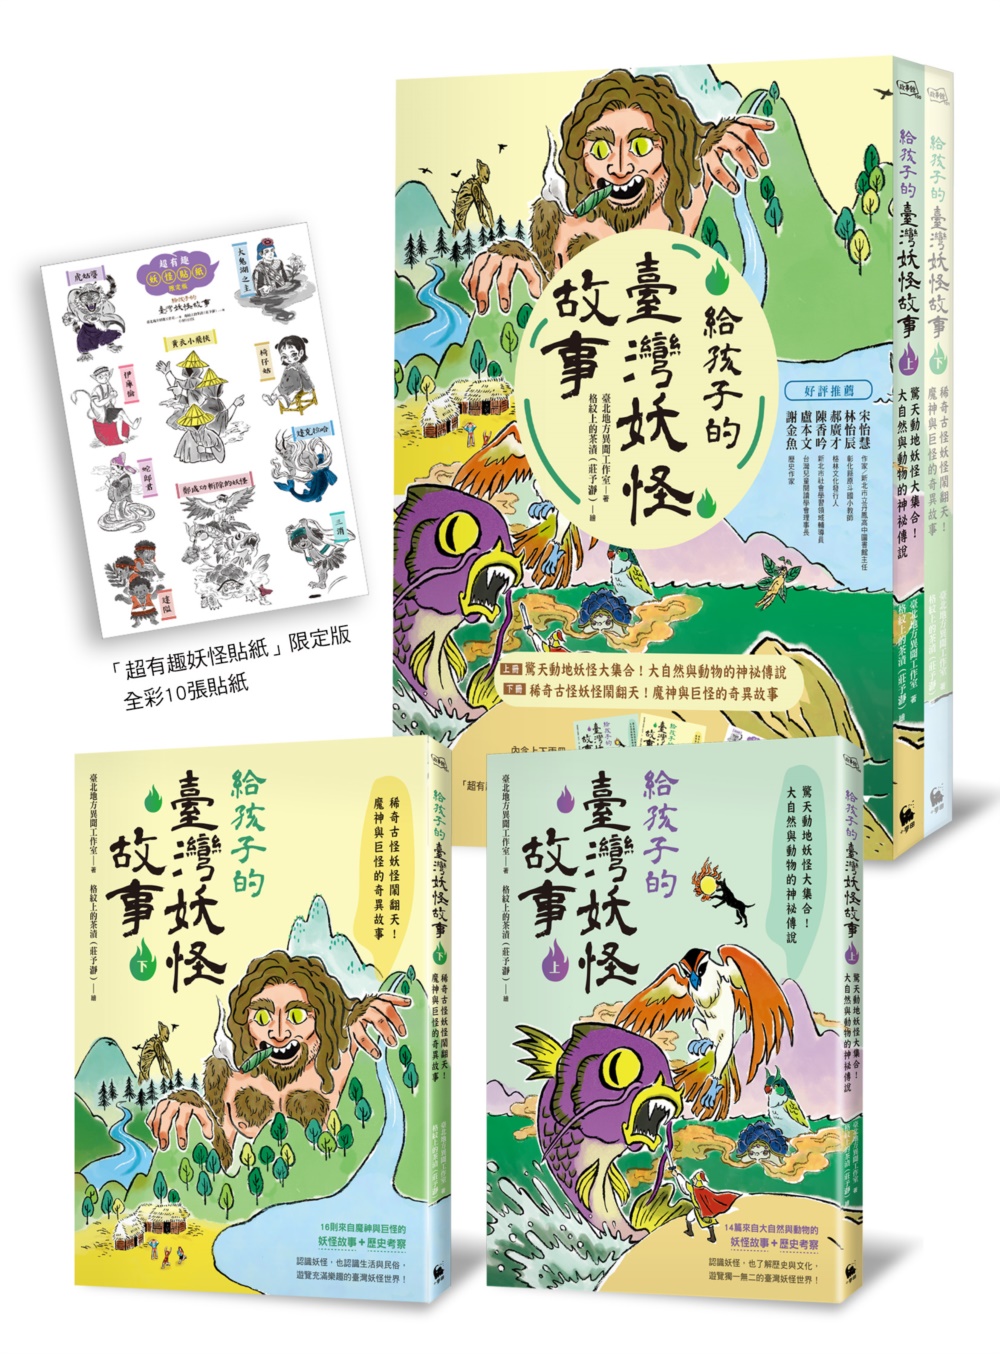 給孩子的臺灣妖怪故事(大自然與動物的神祕傳說&魔神與巨怪的奇異故事‧上下兩冊限量「超有趣」貼紙贈品版)